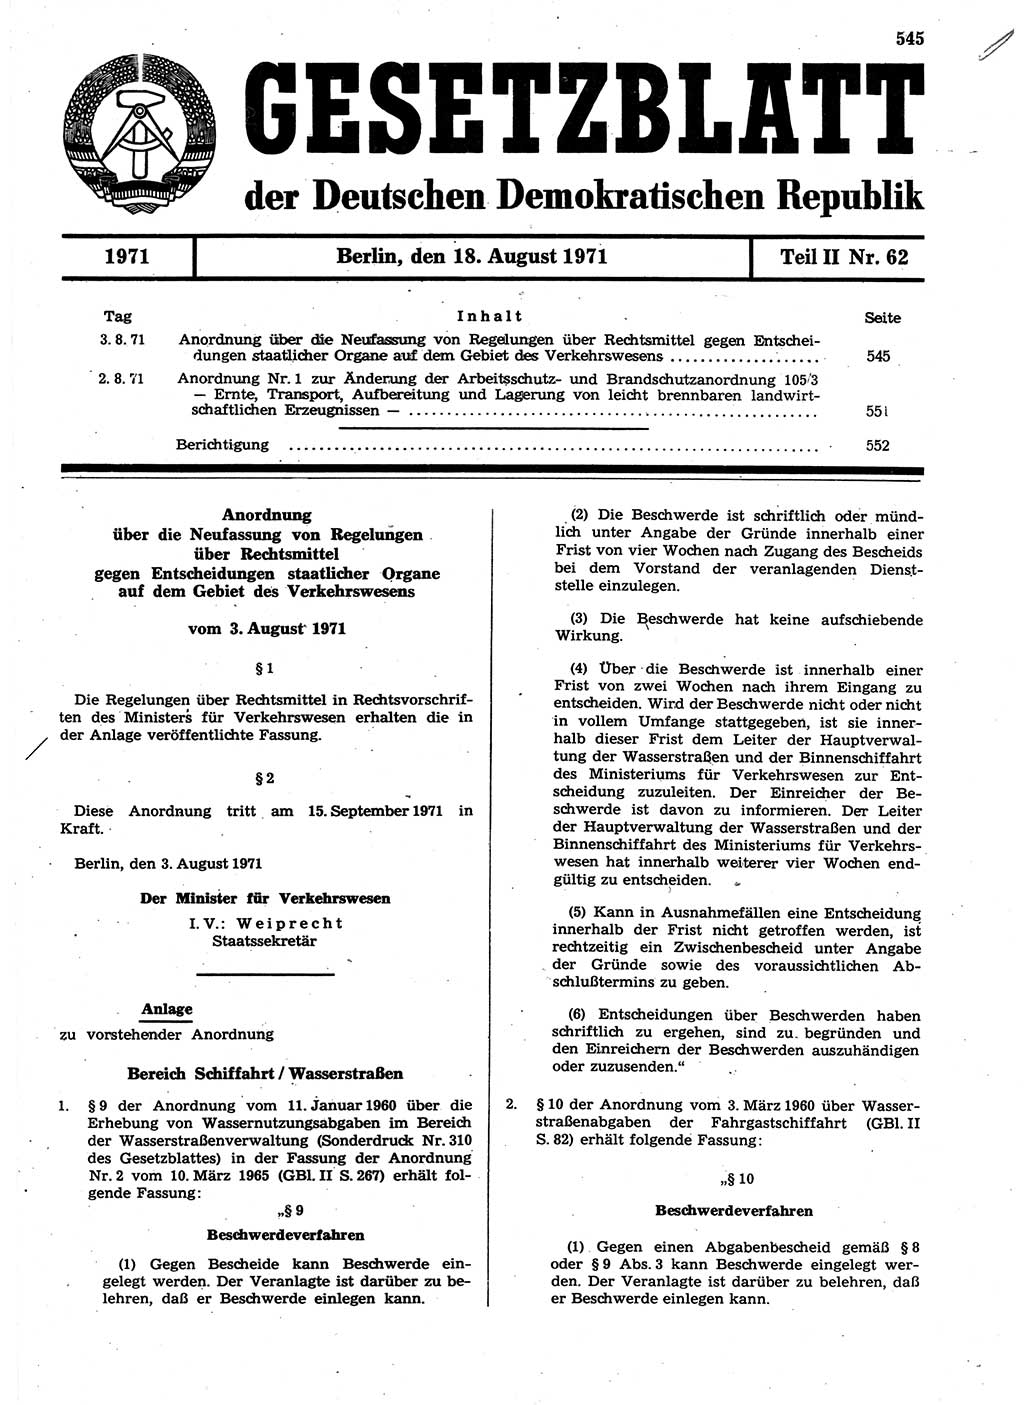 Gesetzblatt (GBl.) der Deutschen Demokratischen Republik (DDR) Teil ⅠⅠ 1971, Seite 545 (GBl. DDR ⅠⅠ 1971, S. 545)